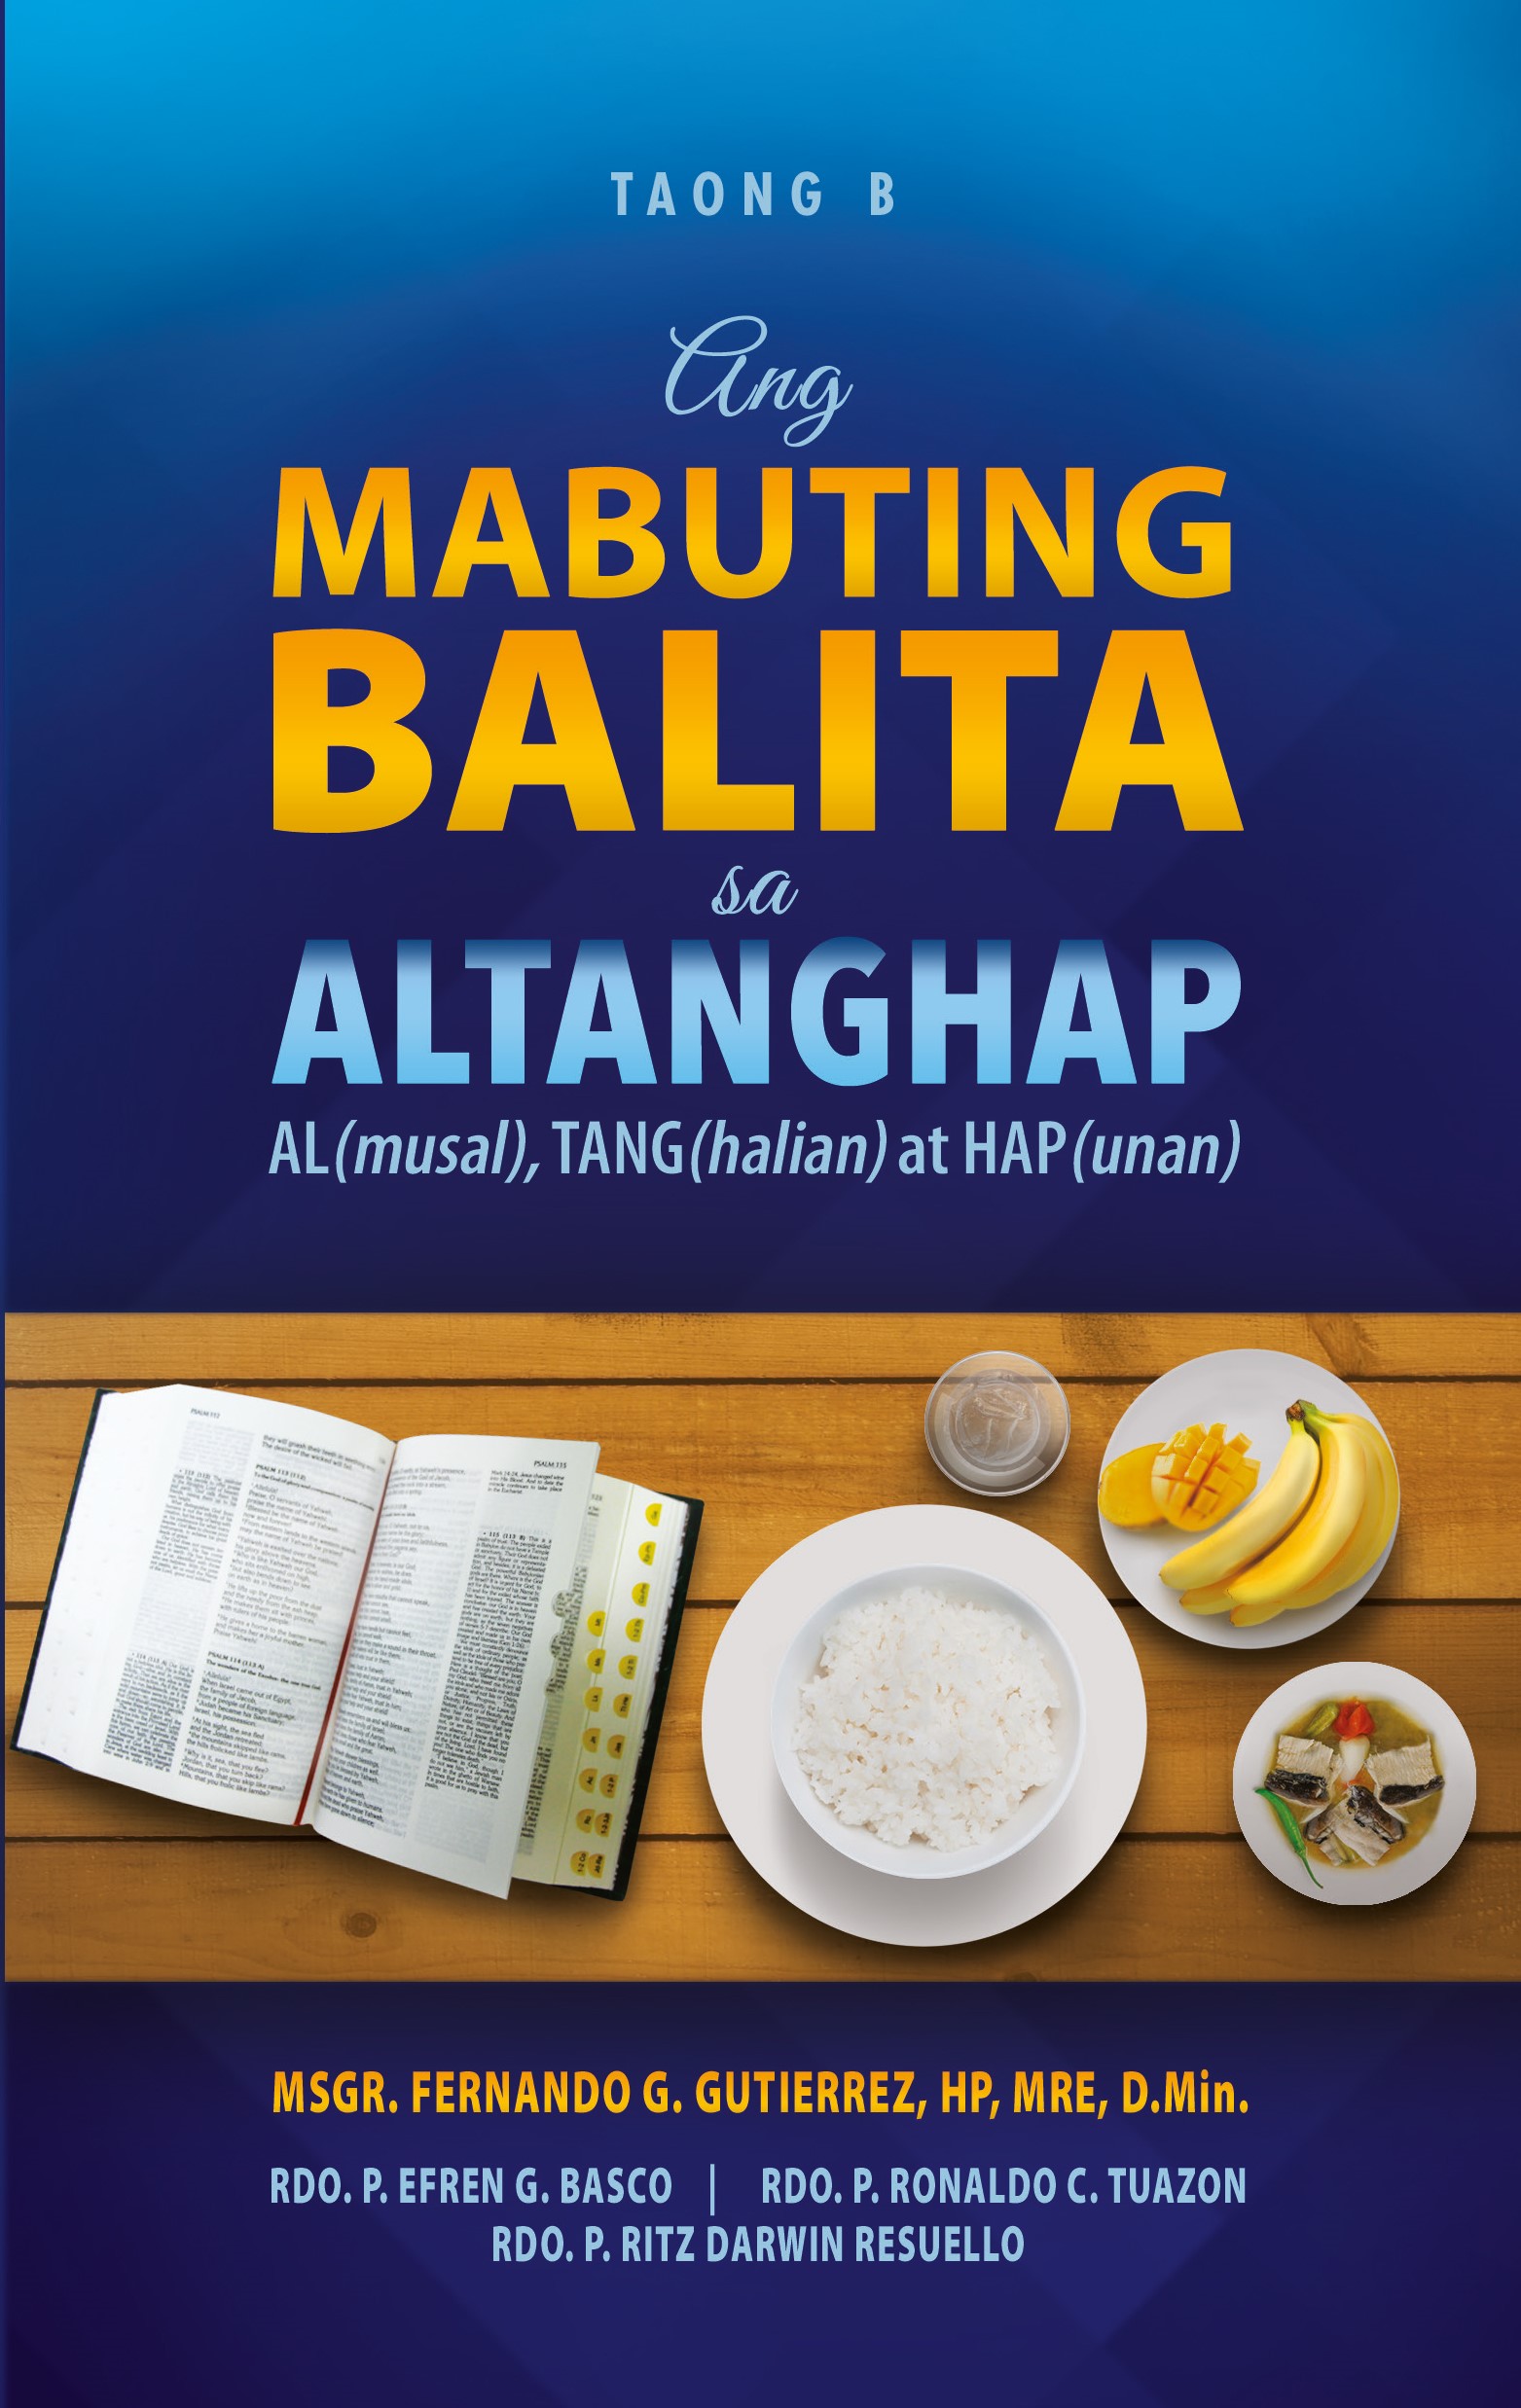 ANG MABUTING BALITA SA ALTANGHAP TAONG B AL(musal), TANG(halian) at HAP(unan)